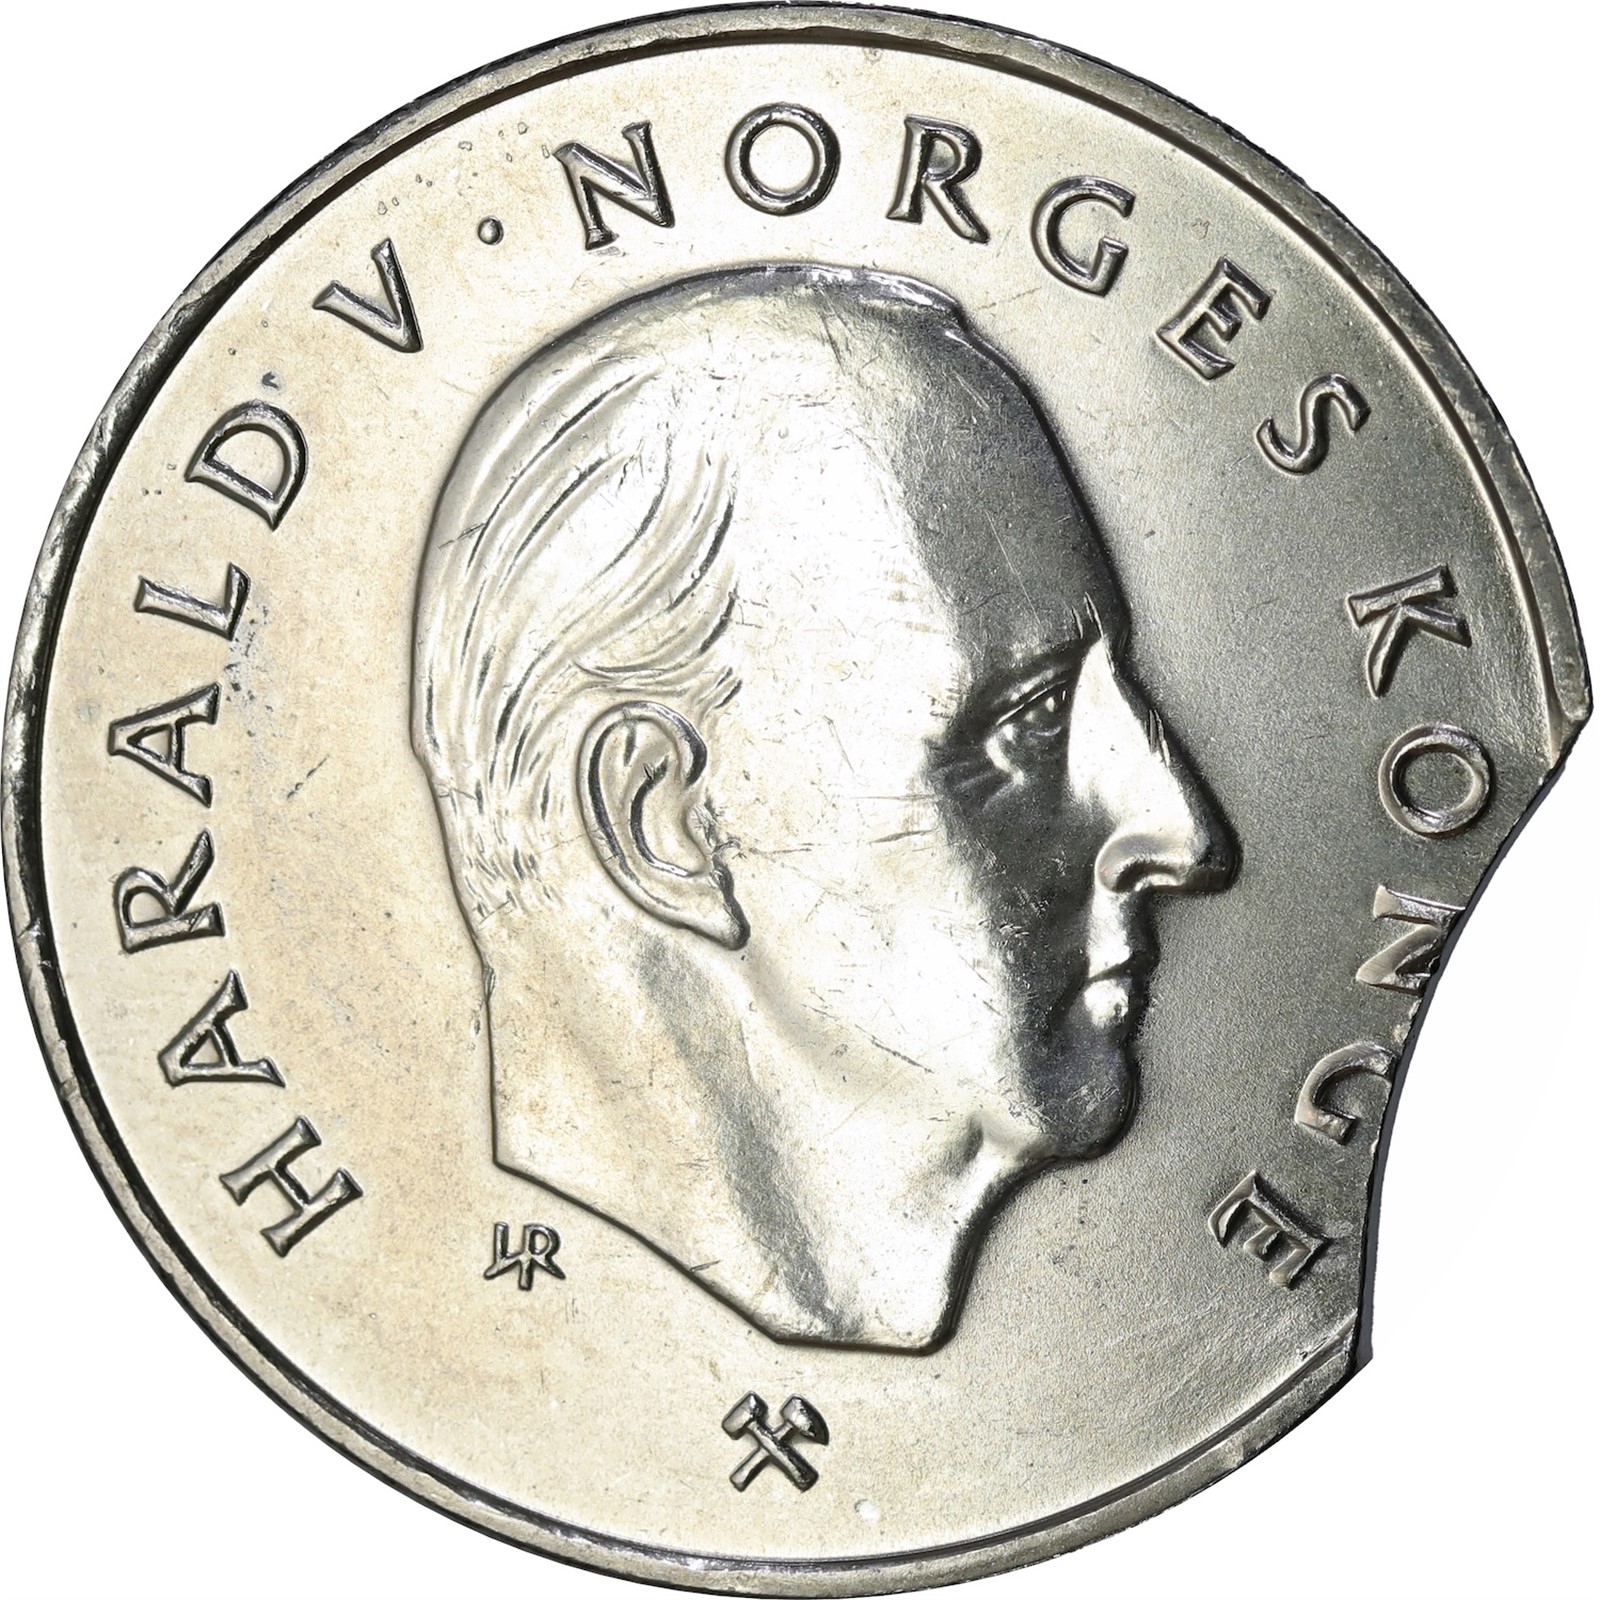 NORWAY. Harald V. 5 Kroner 1992 Mint Error Kv 0 (UNC)